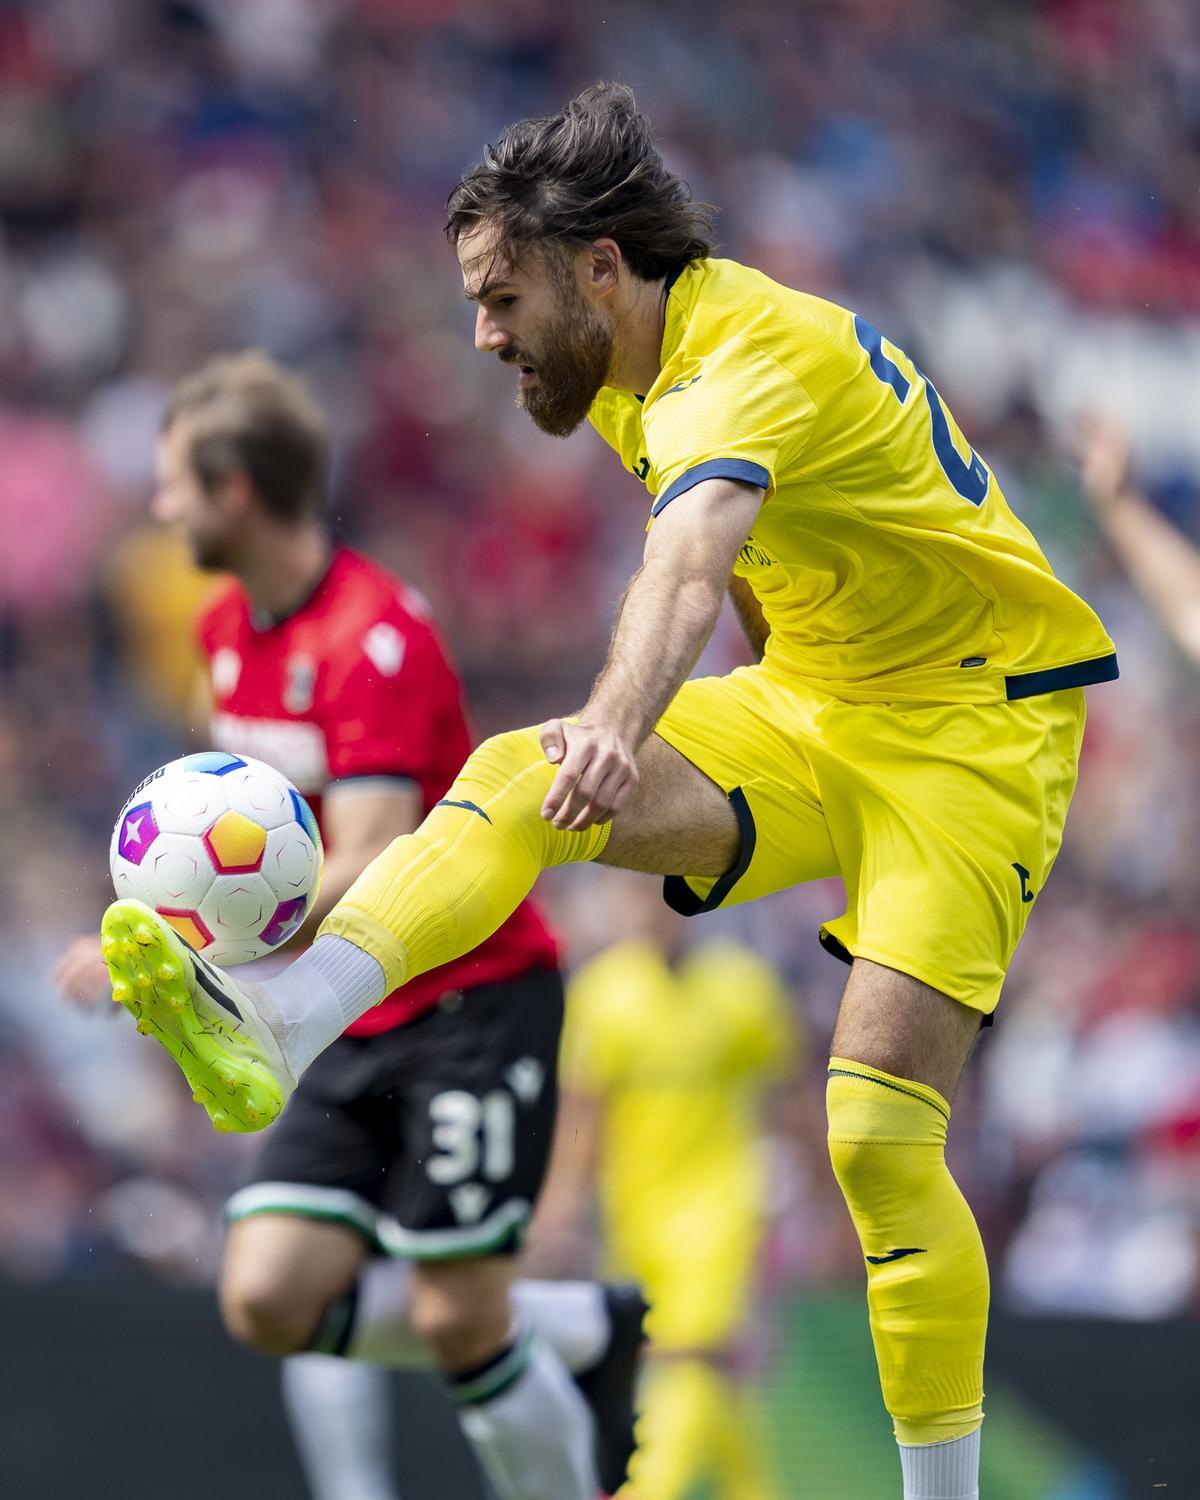 Brerenton Díaz desperdició varias ocasiones para el Villarreal en la segunda mitad.